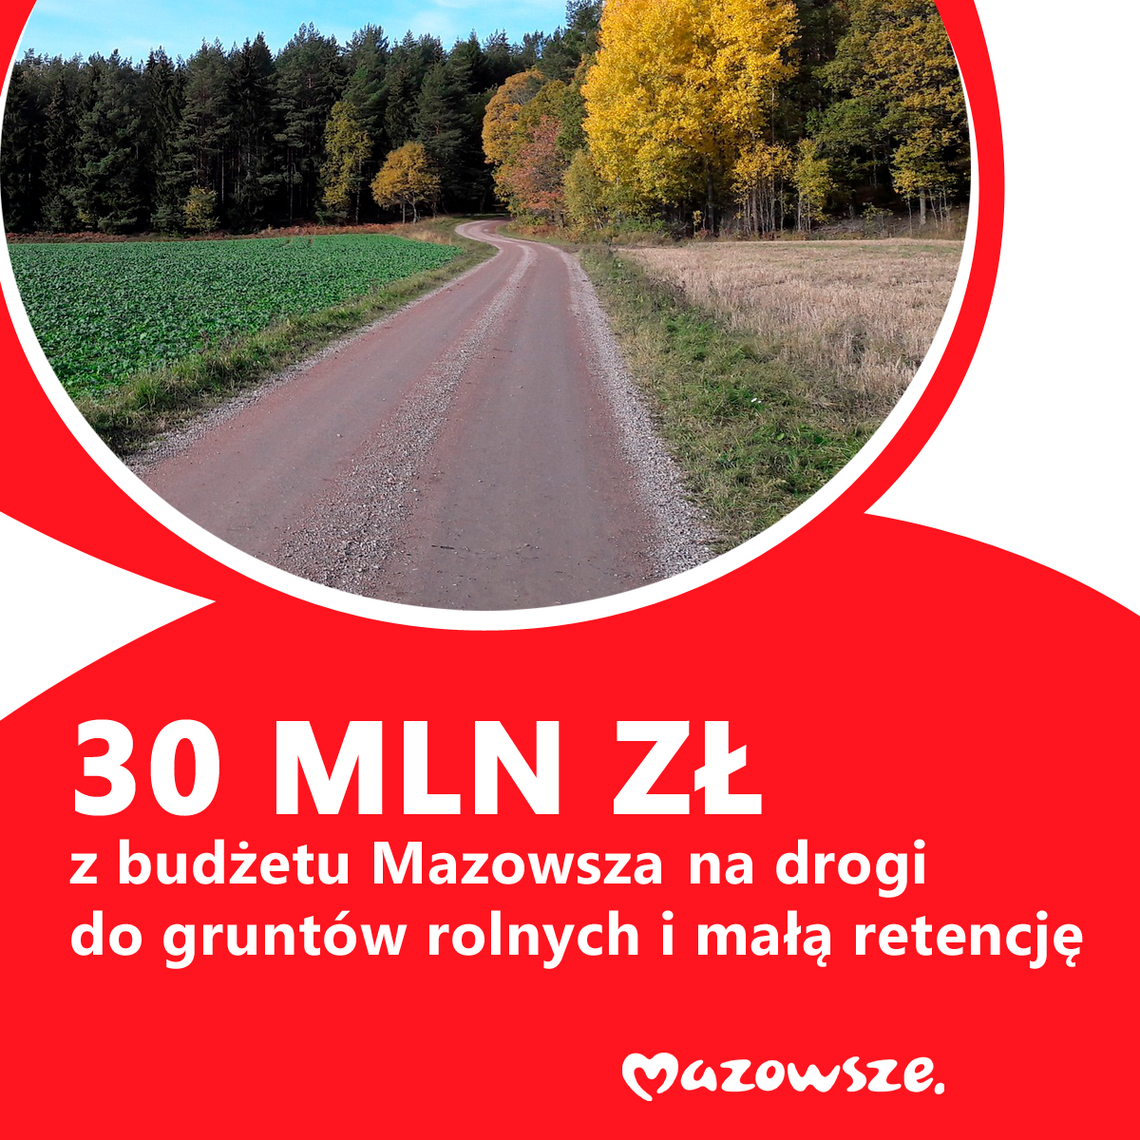 Ponad 30 mln zł z budżetu Mazowsza na drogi dojazdowe do gruntów rolnych i małą retencję - 7 Dni na Mazowszu